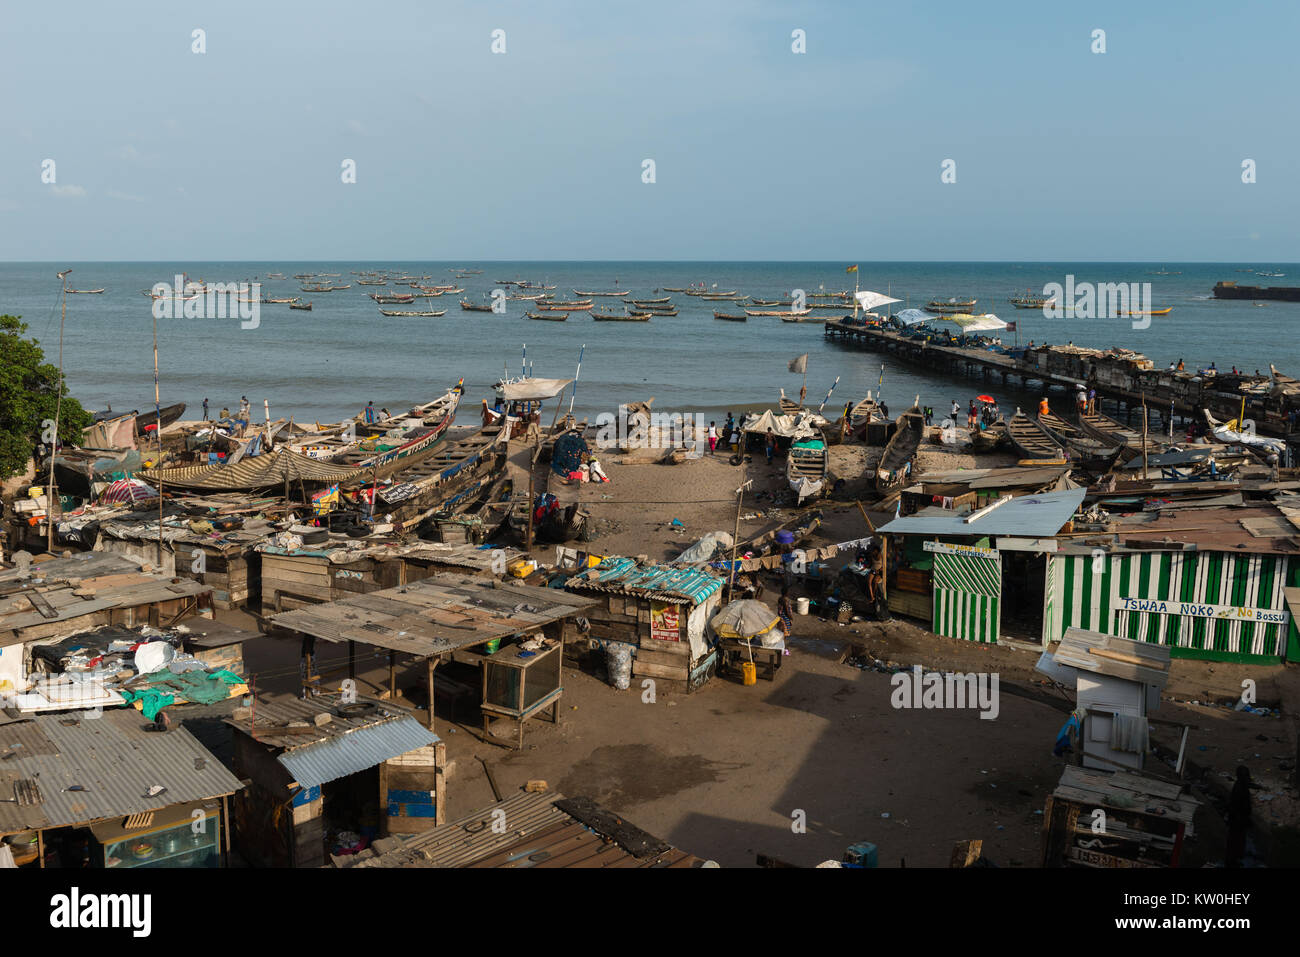 Jamestown Fishing Village, Jamestown, Accra, Ghana Stock Photo